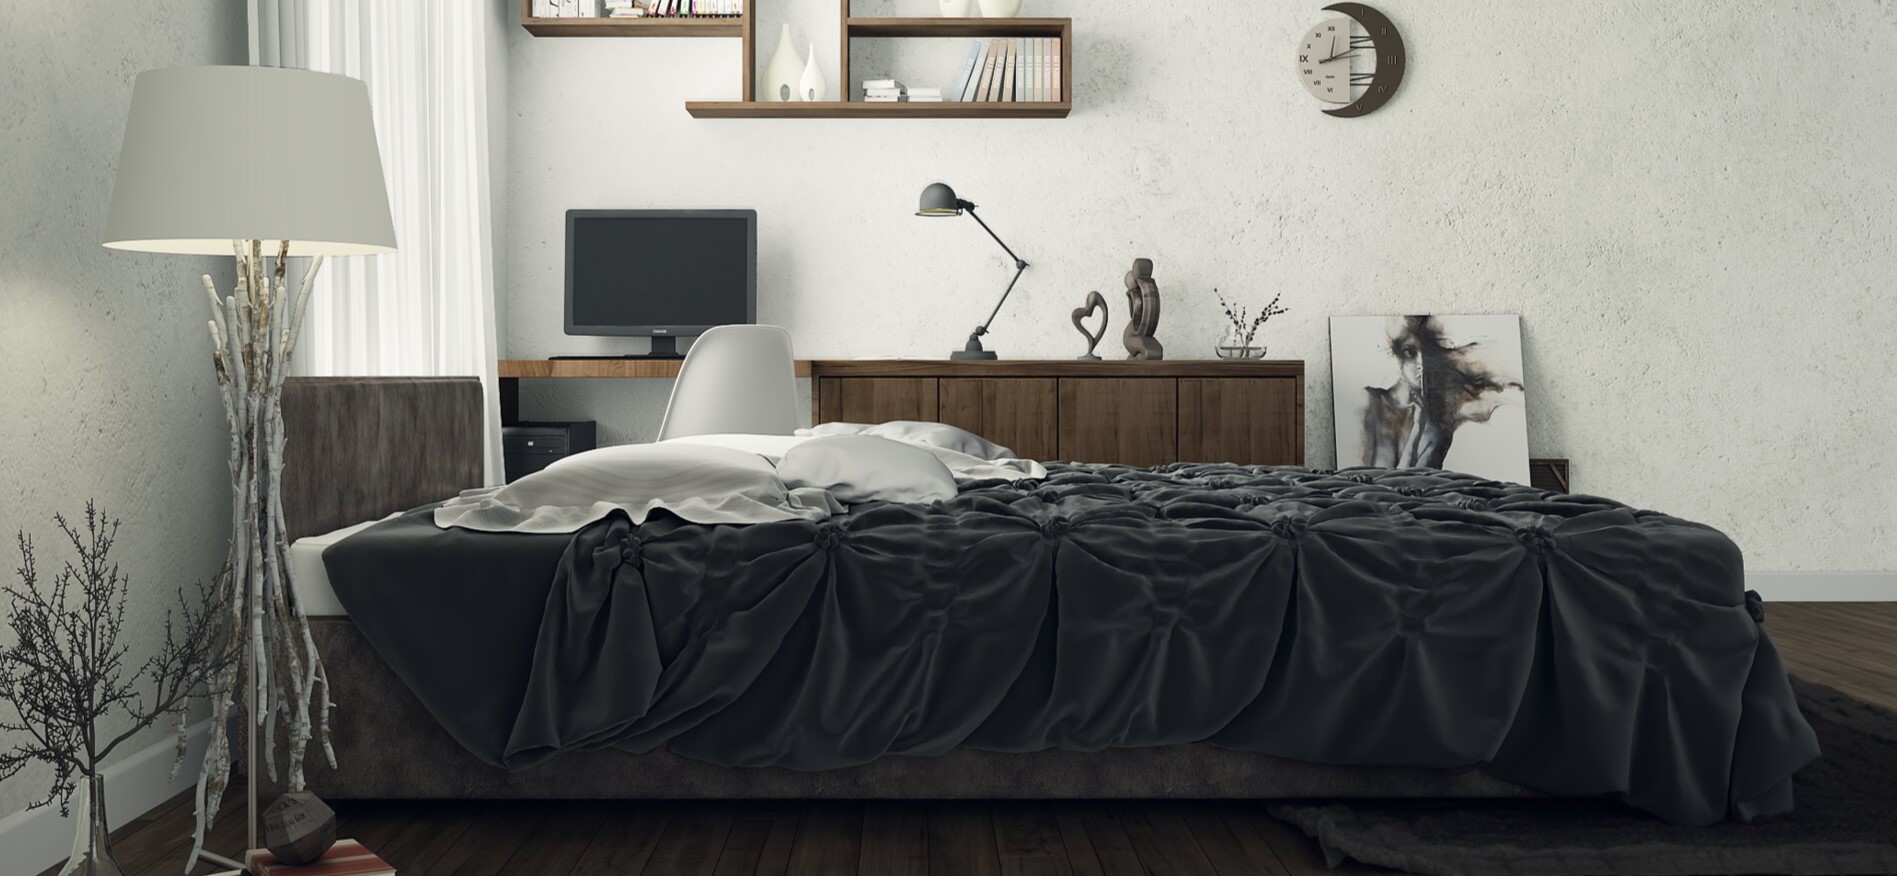 Кровать идеально подходит под современный стиль интерьера в спальне